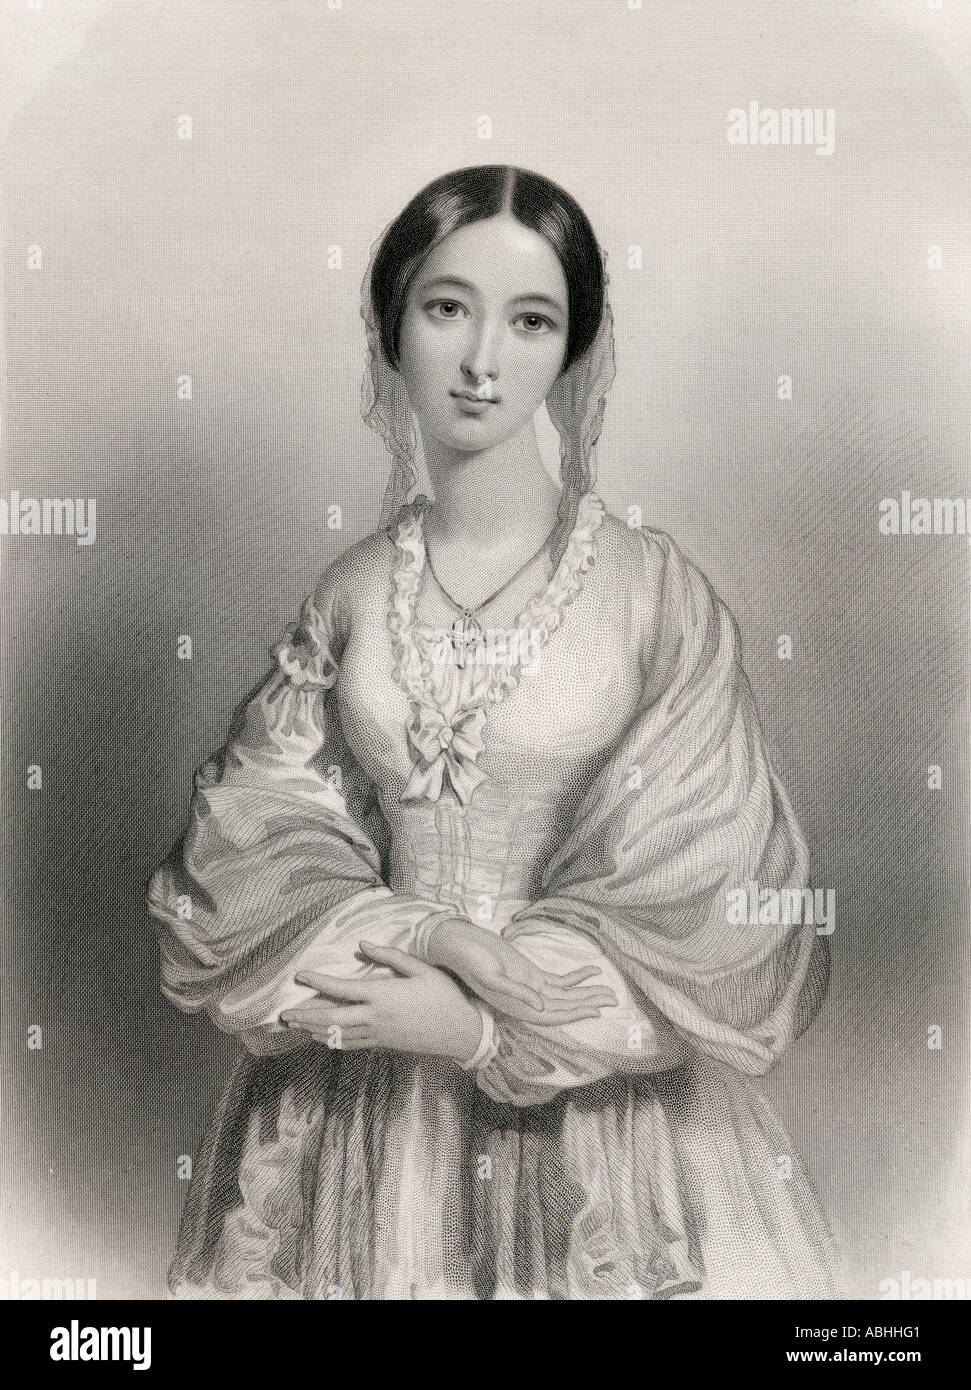 Florence Nightingale, 1820 - 1910. Pionnier des soins infirmiers et réformateur des méthodes d'assainissement hospitalières. Banque D'Images